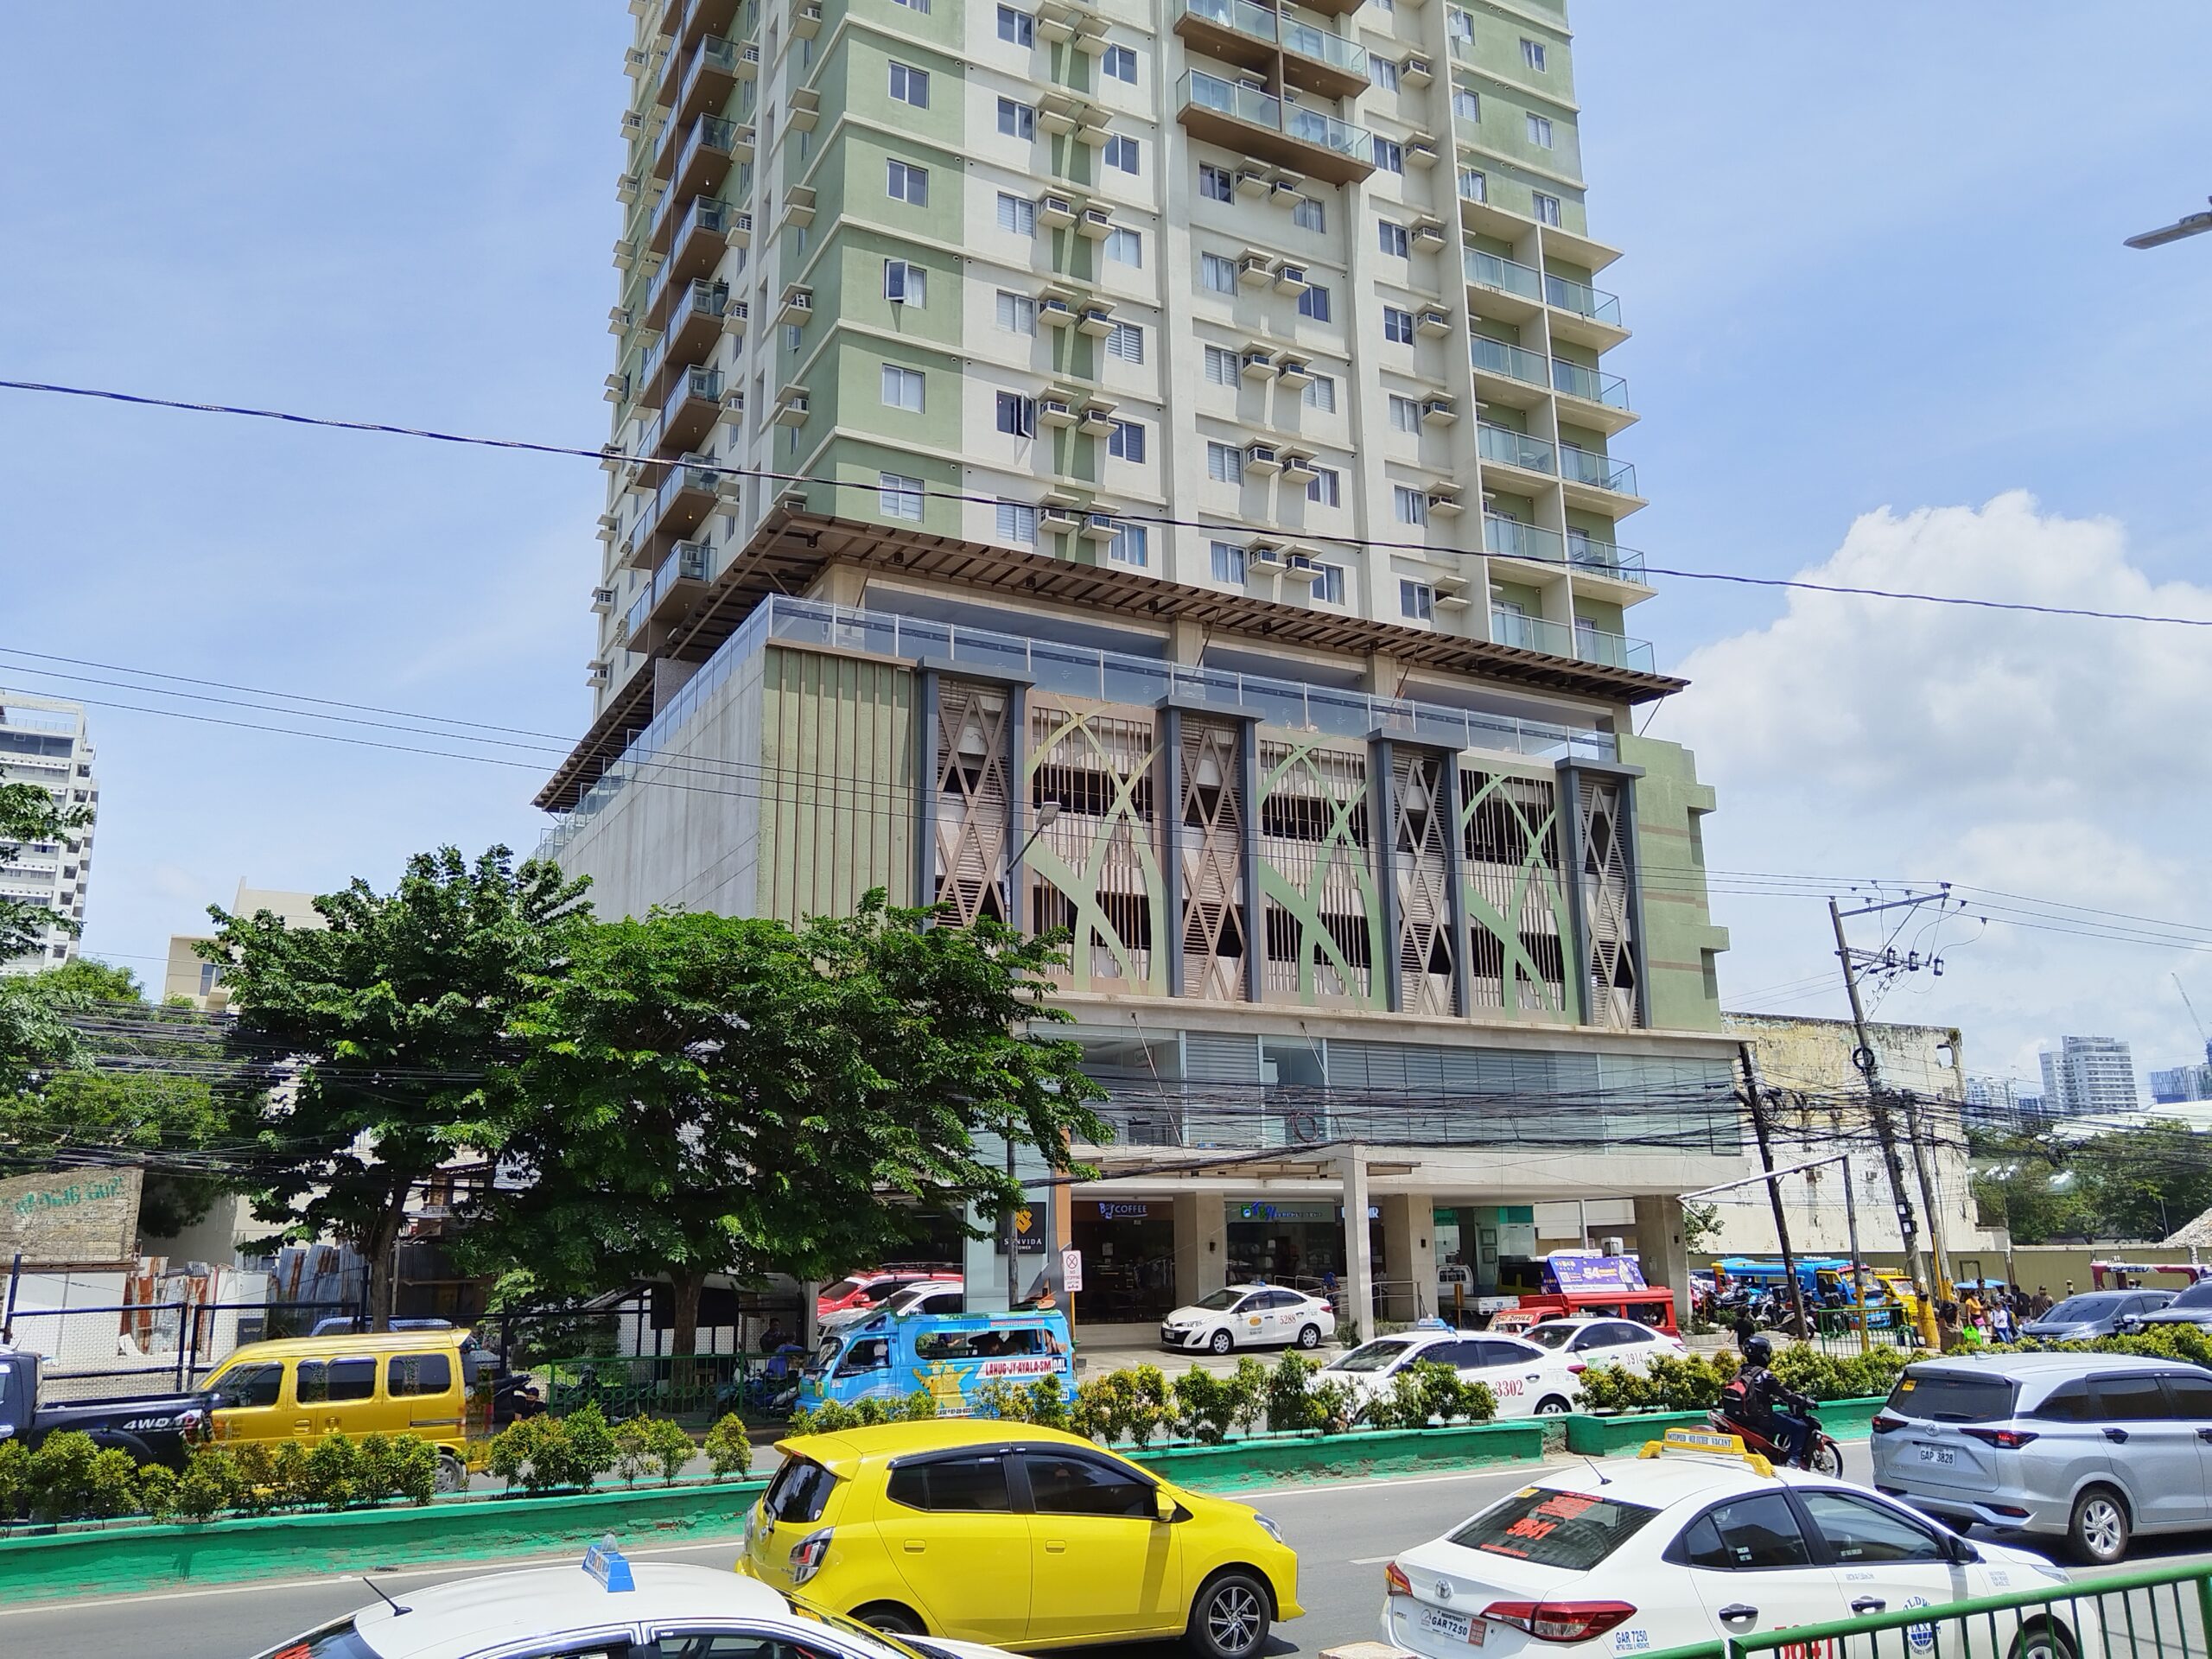 Sunvida Tower condominium for rent or for sale in Cebu City near SM Mabolo